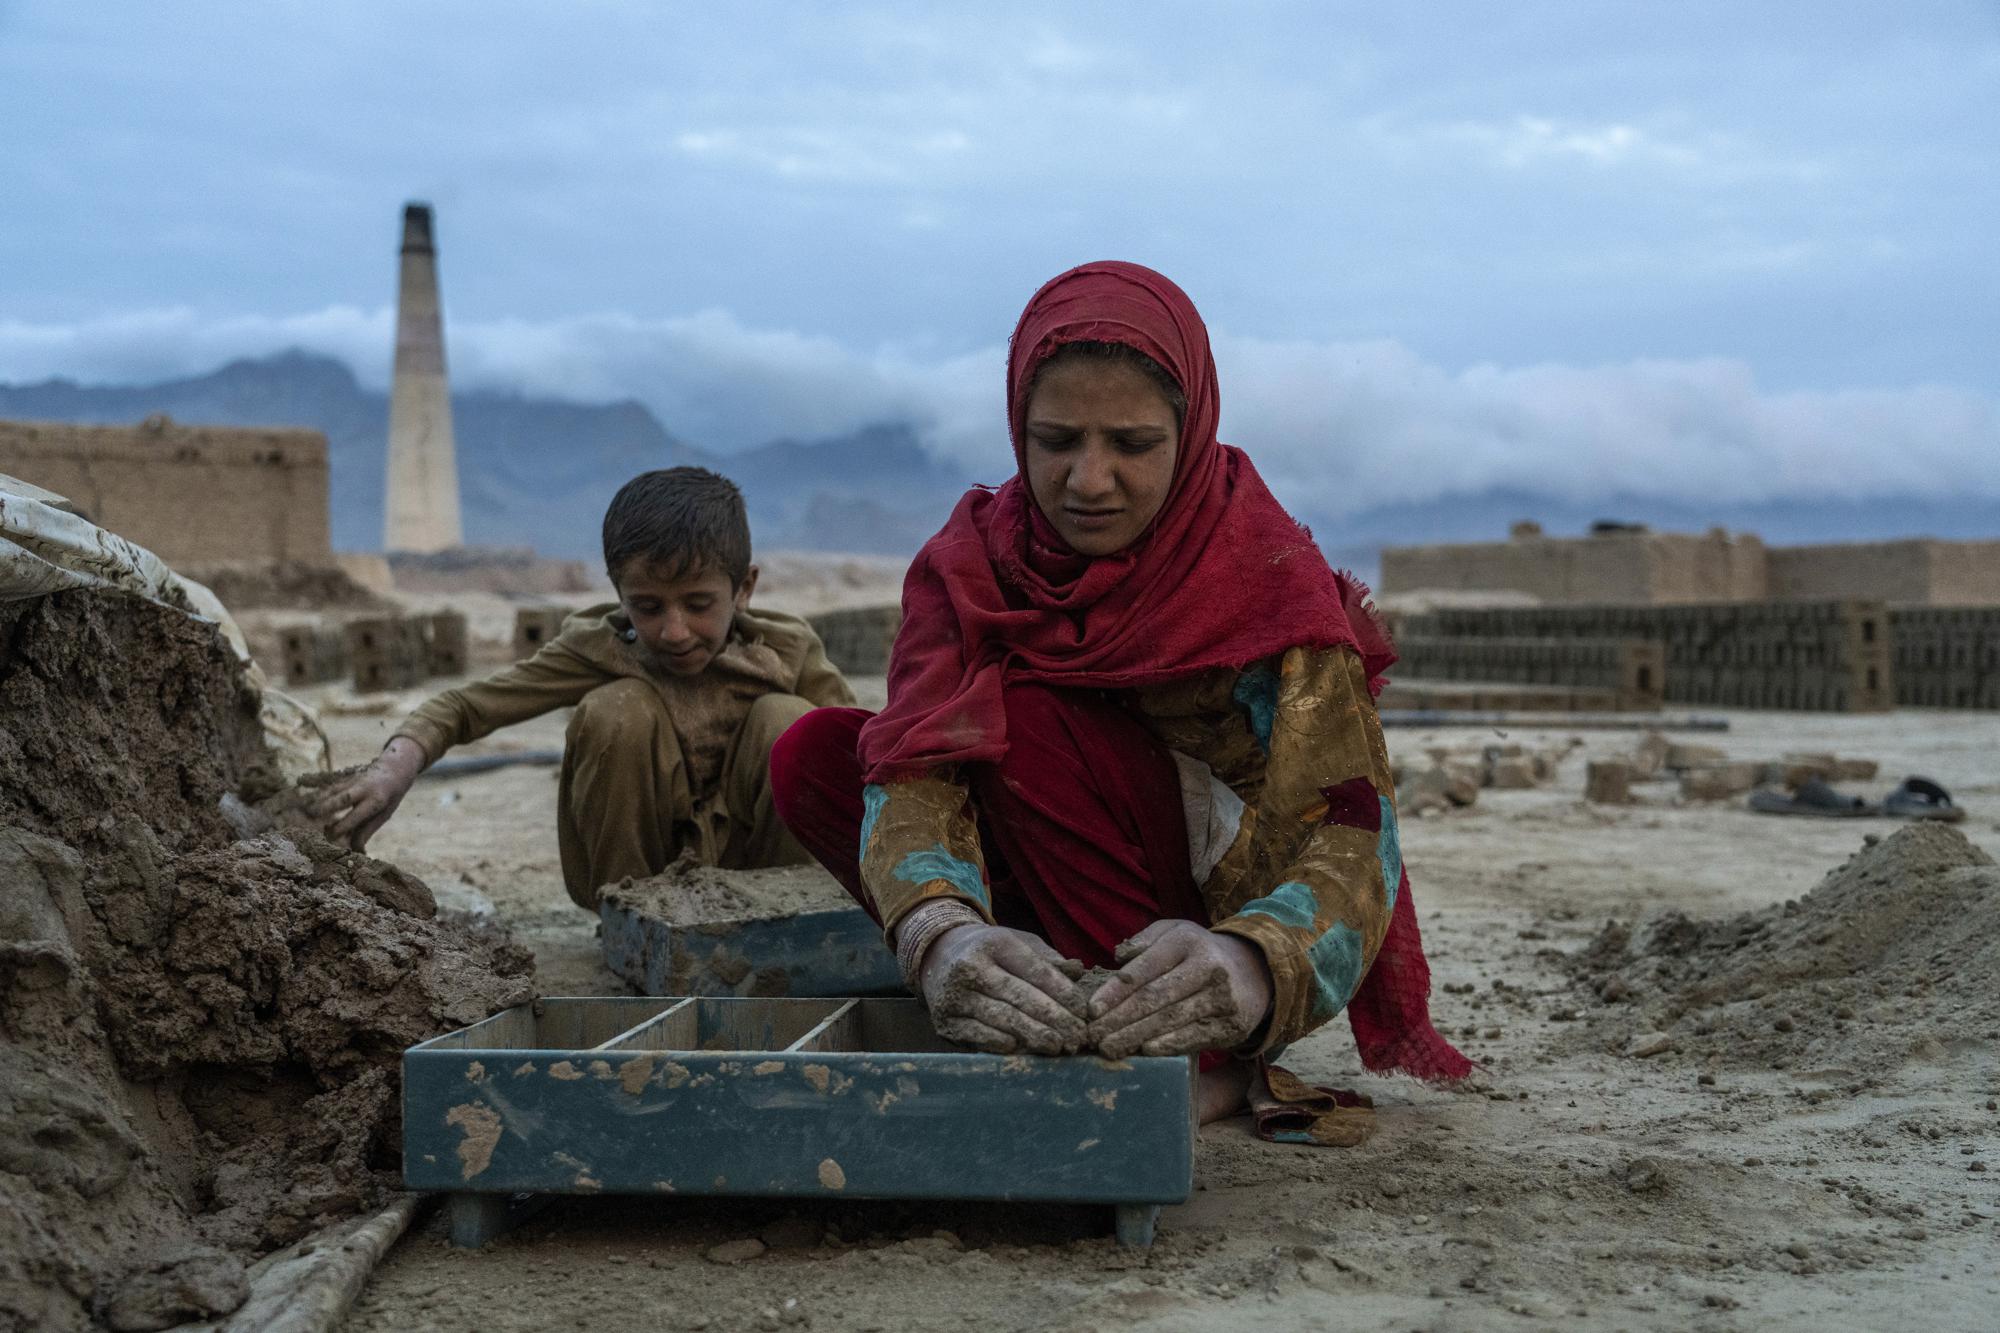 Trong các nhà máy gạch trên đường cao tốc phía bắc thủ đô Kabul đang đầy rẫy những đứa trẻ ngày đêm lao động. Điều kiện trong lò gạch rất khó khăn ngay cả đối với người lớn, nhưng hầu hết trong số họ, trẻ em từ 4 - 5 năm tuổi được tìm thấy lao động cùng với gia đình từ sáng sớm cho đến tối trong cái nóng của mùa hè.